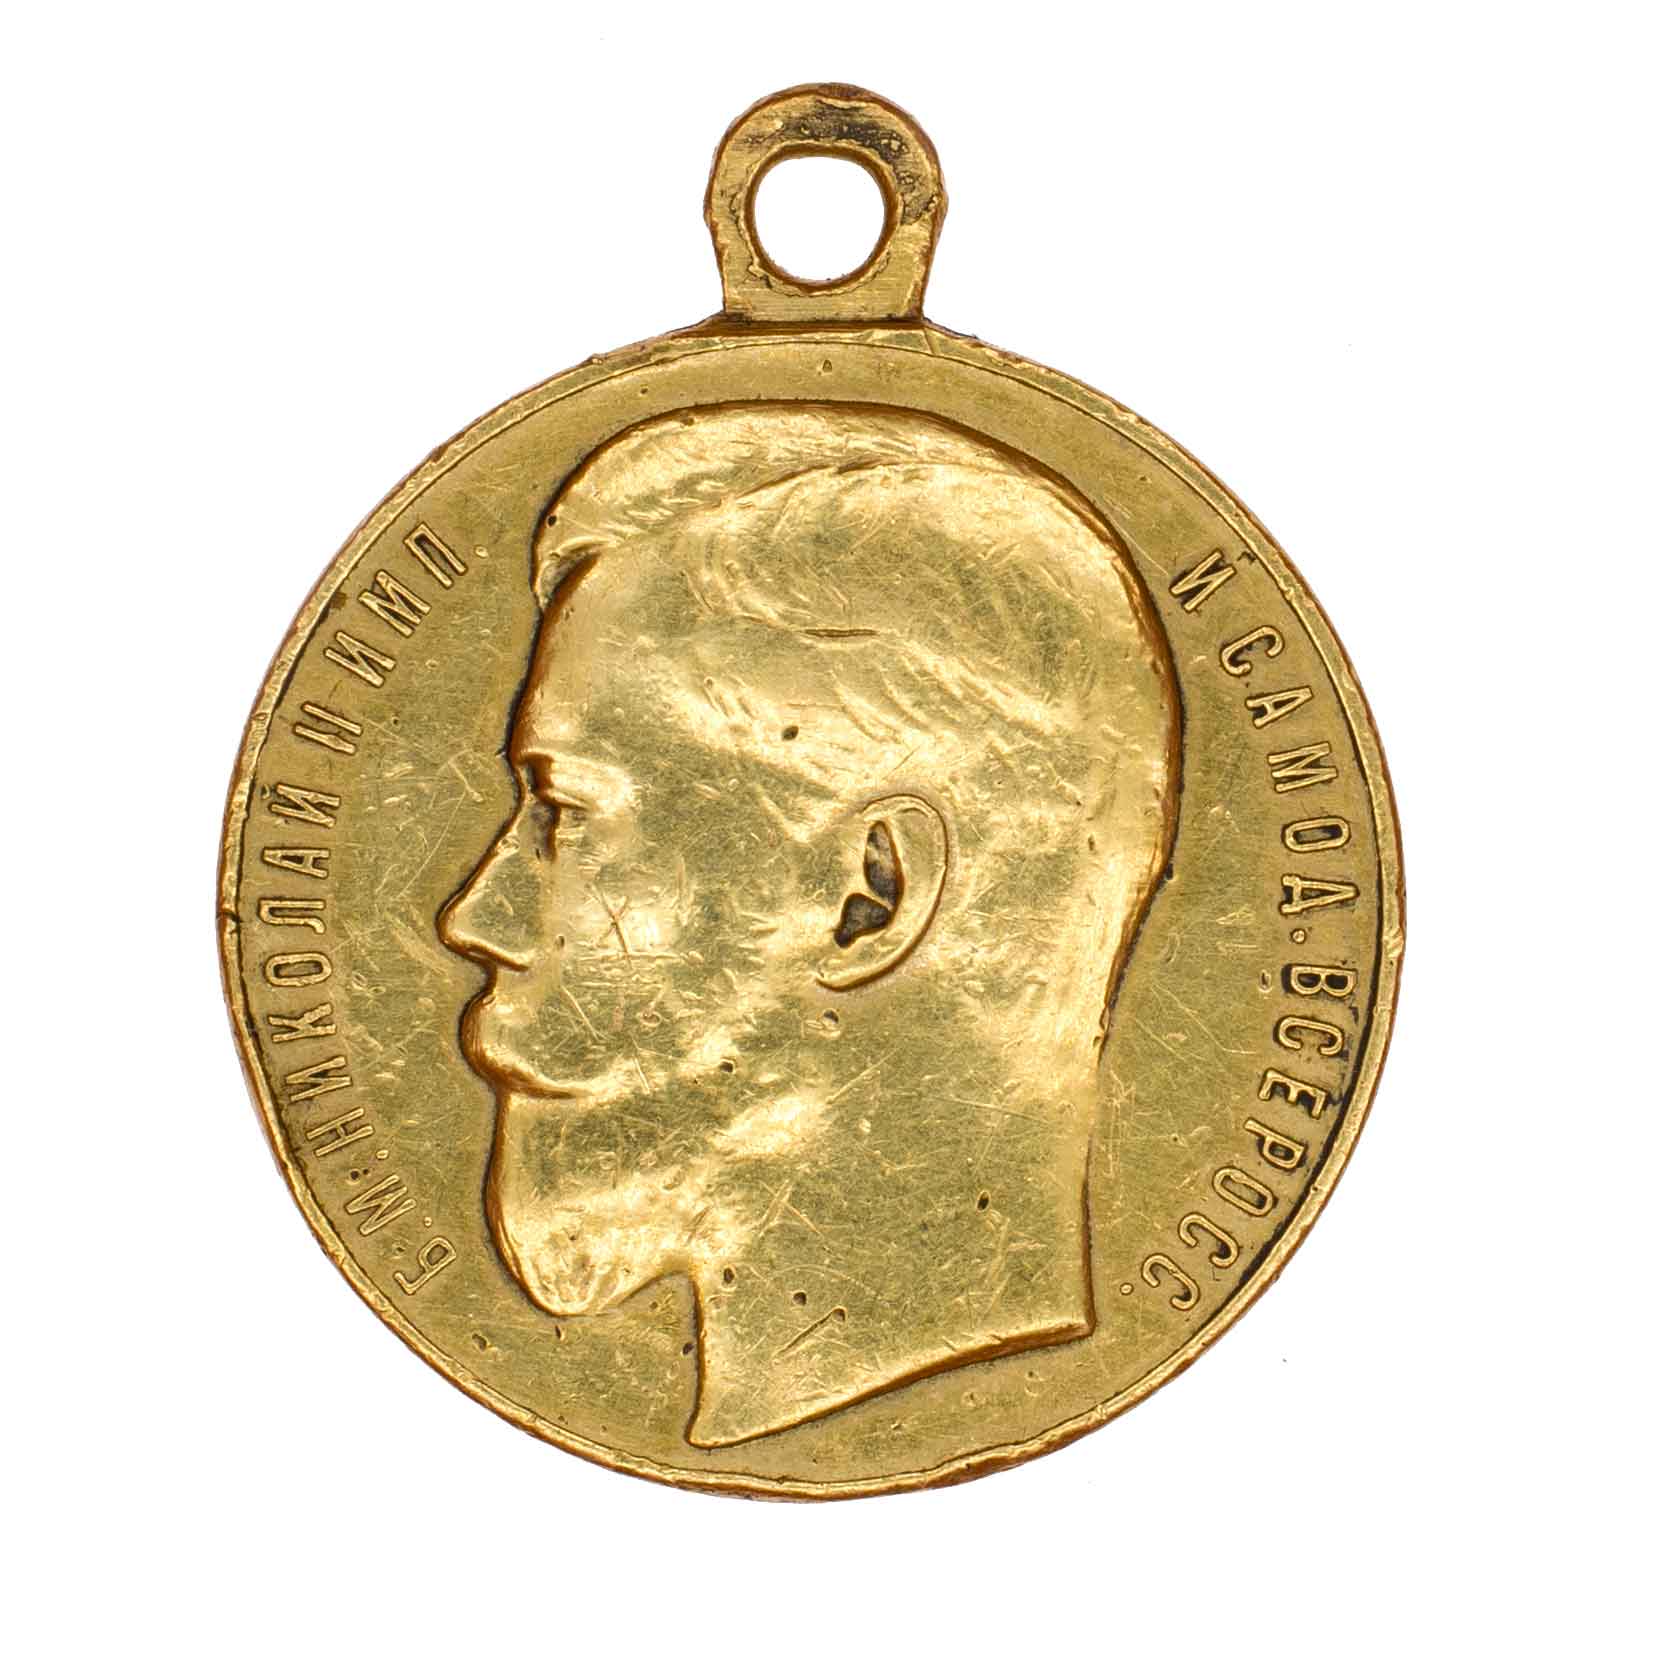 Георгиевская Медаль ("За Храбрость") 2 ст № 2.885 на англичанина.